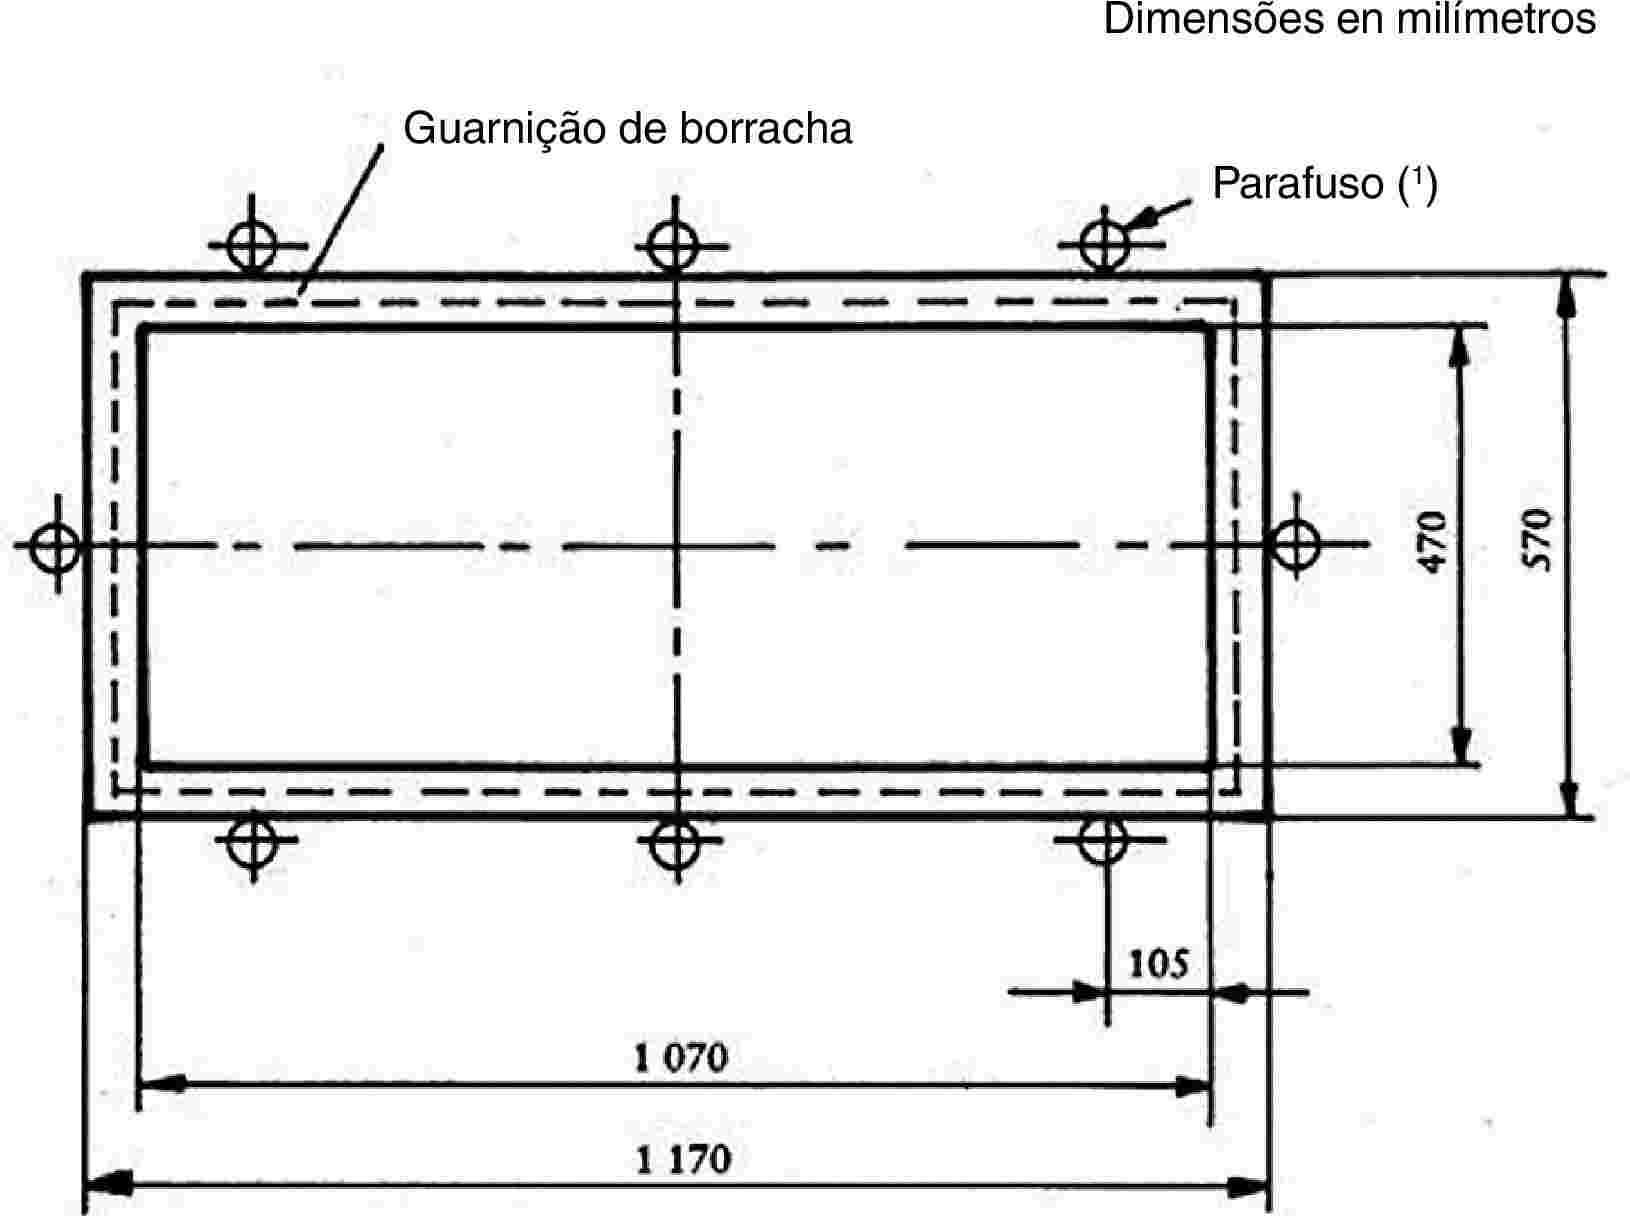 Guarnição de borrachaDimensões en milímetrosParafuso (1)